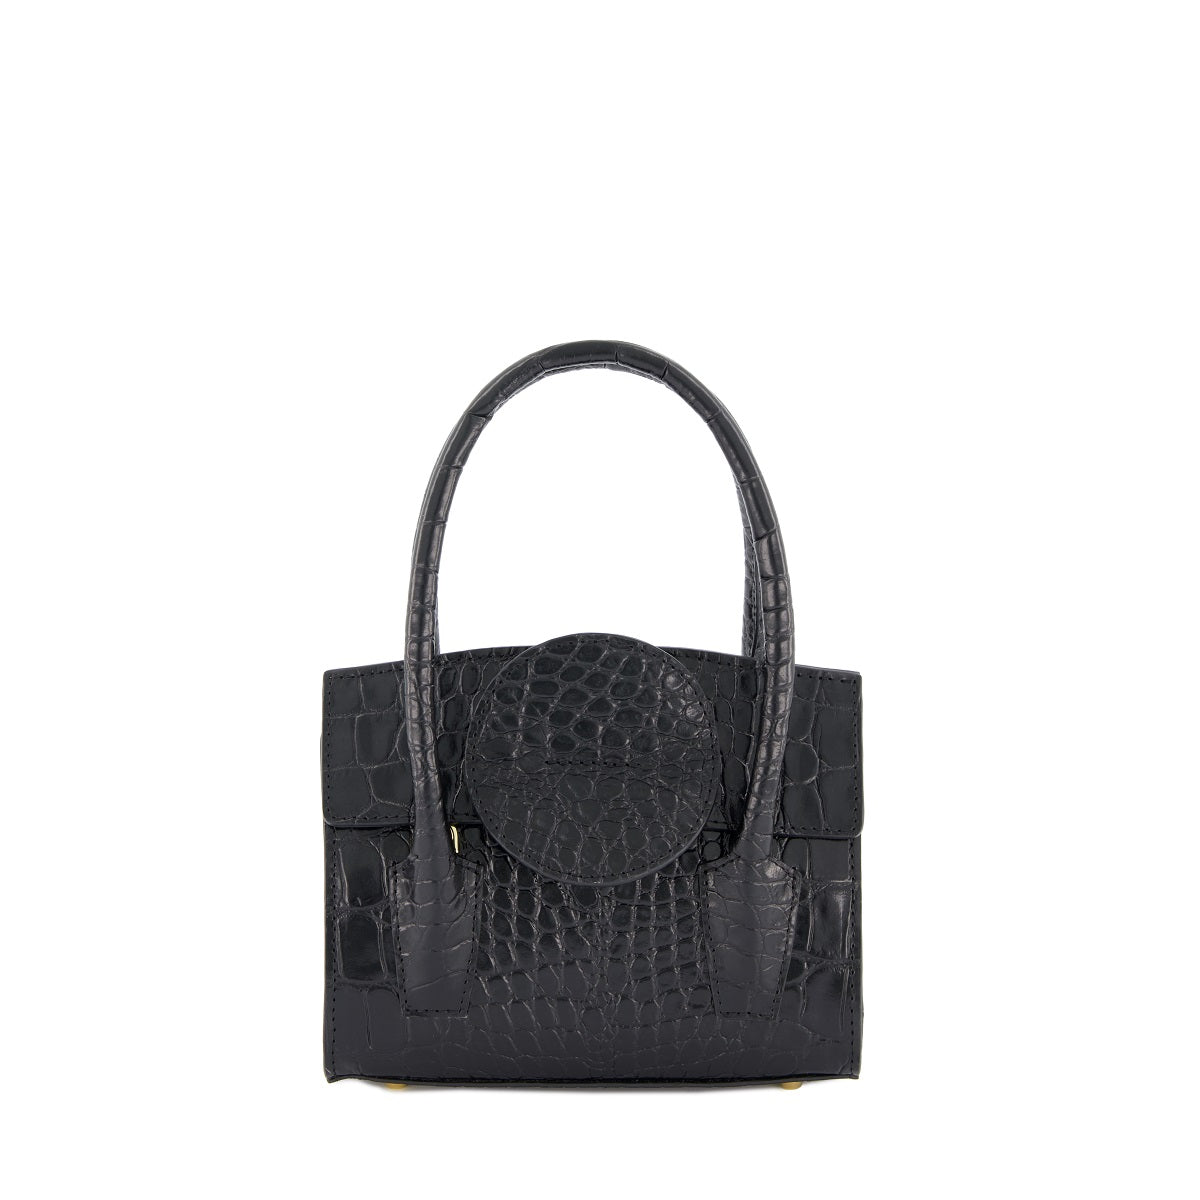 VIKELE STUDIO - Gracia Mini Bag Black, buy at DOORS NYC